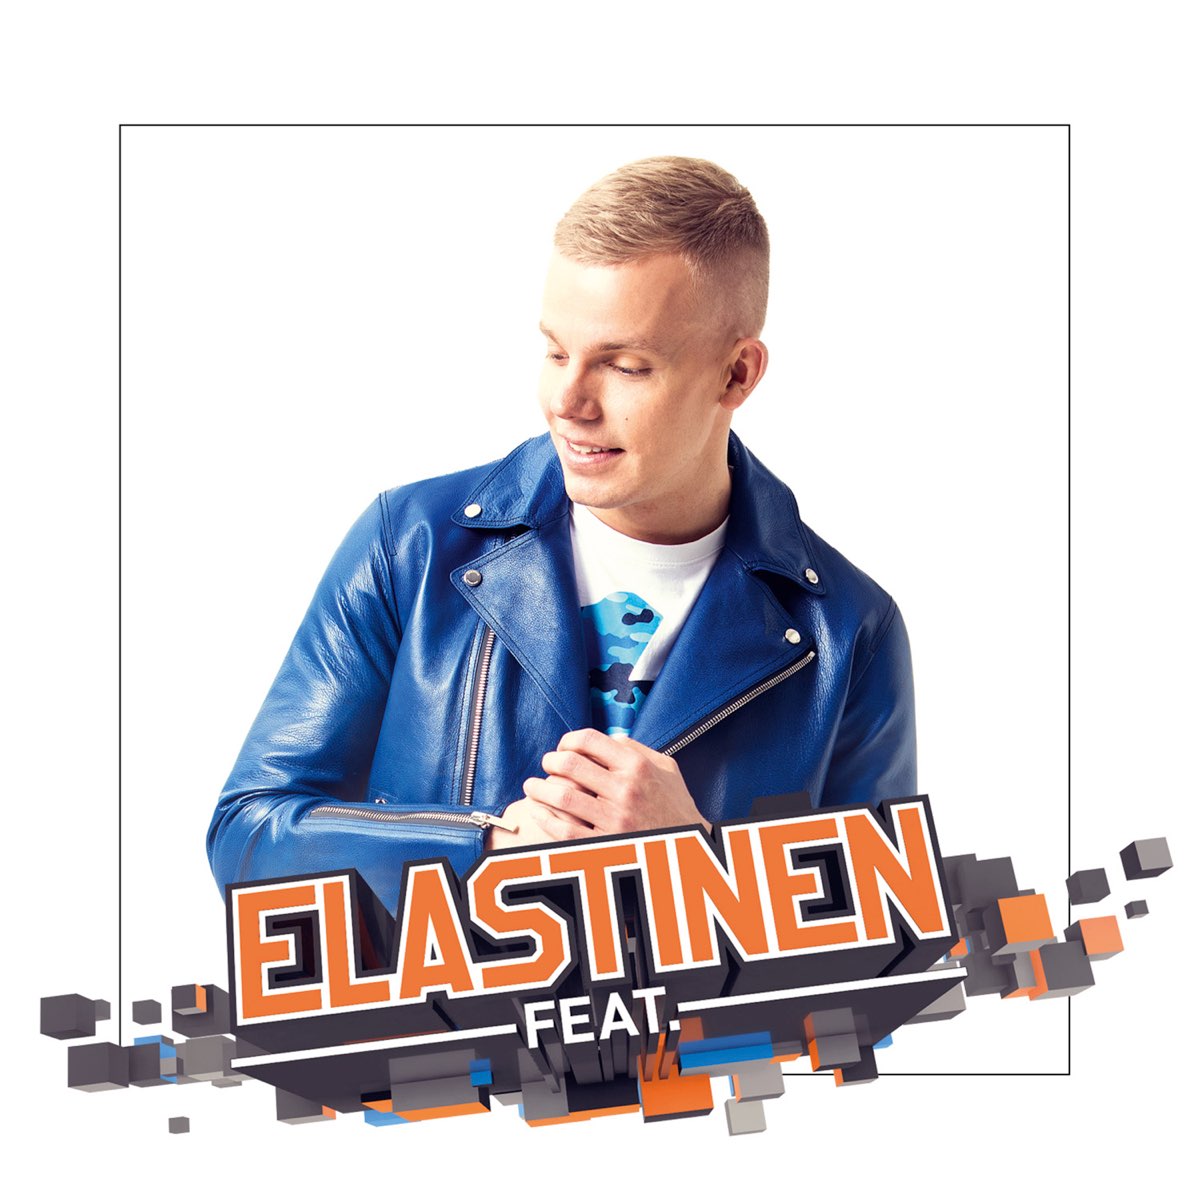 Elastinen Feat. by Elastinen on Apple Music